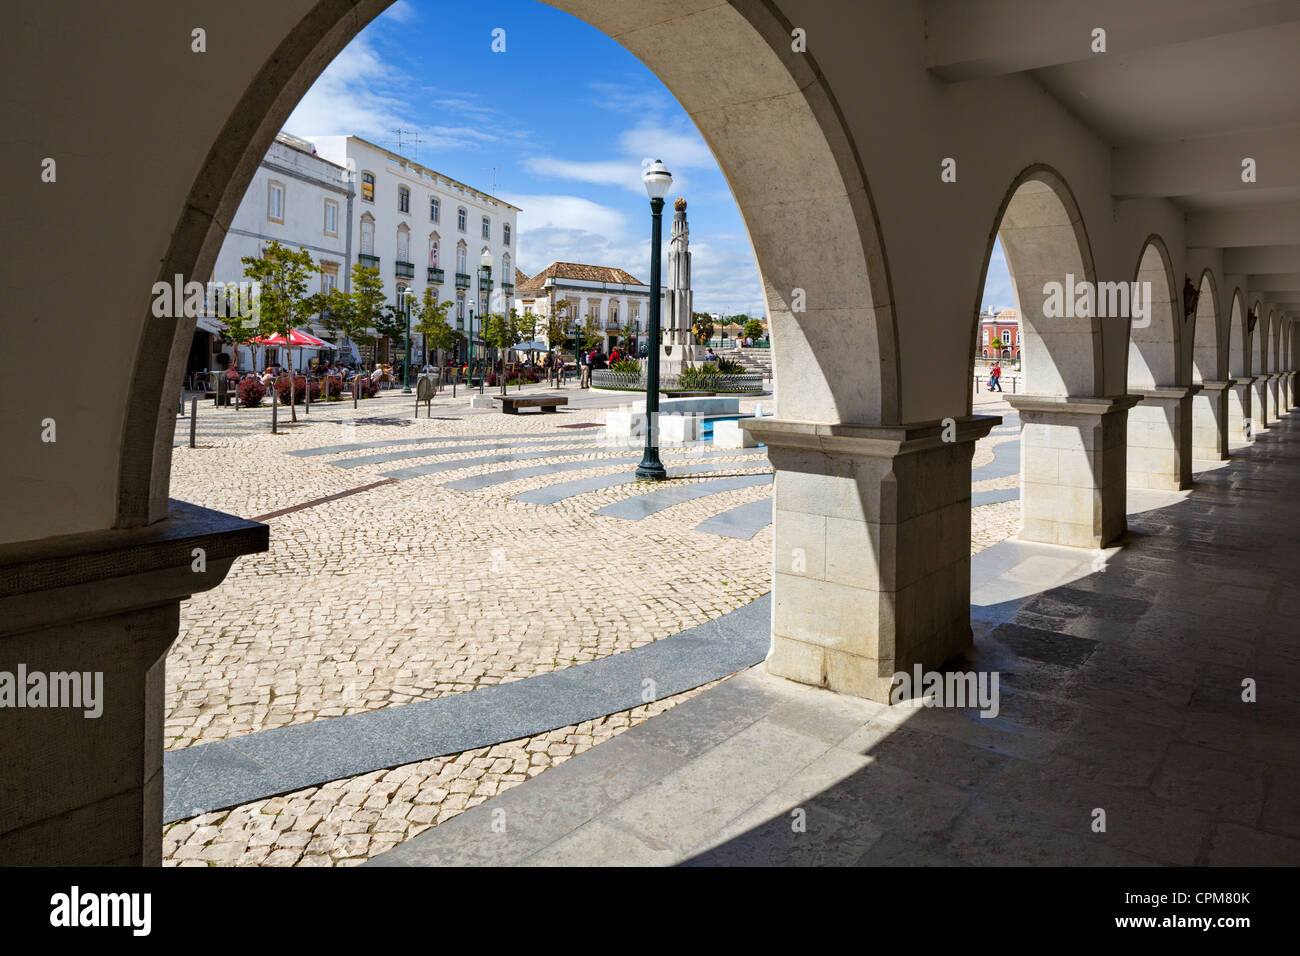 Praca da Republica dans le centre de la vieille ville, Tavira, Algarve, Portugal Banque D'Images